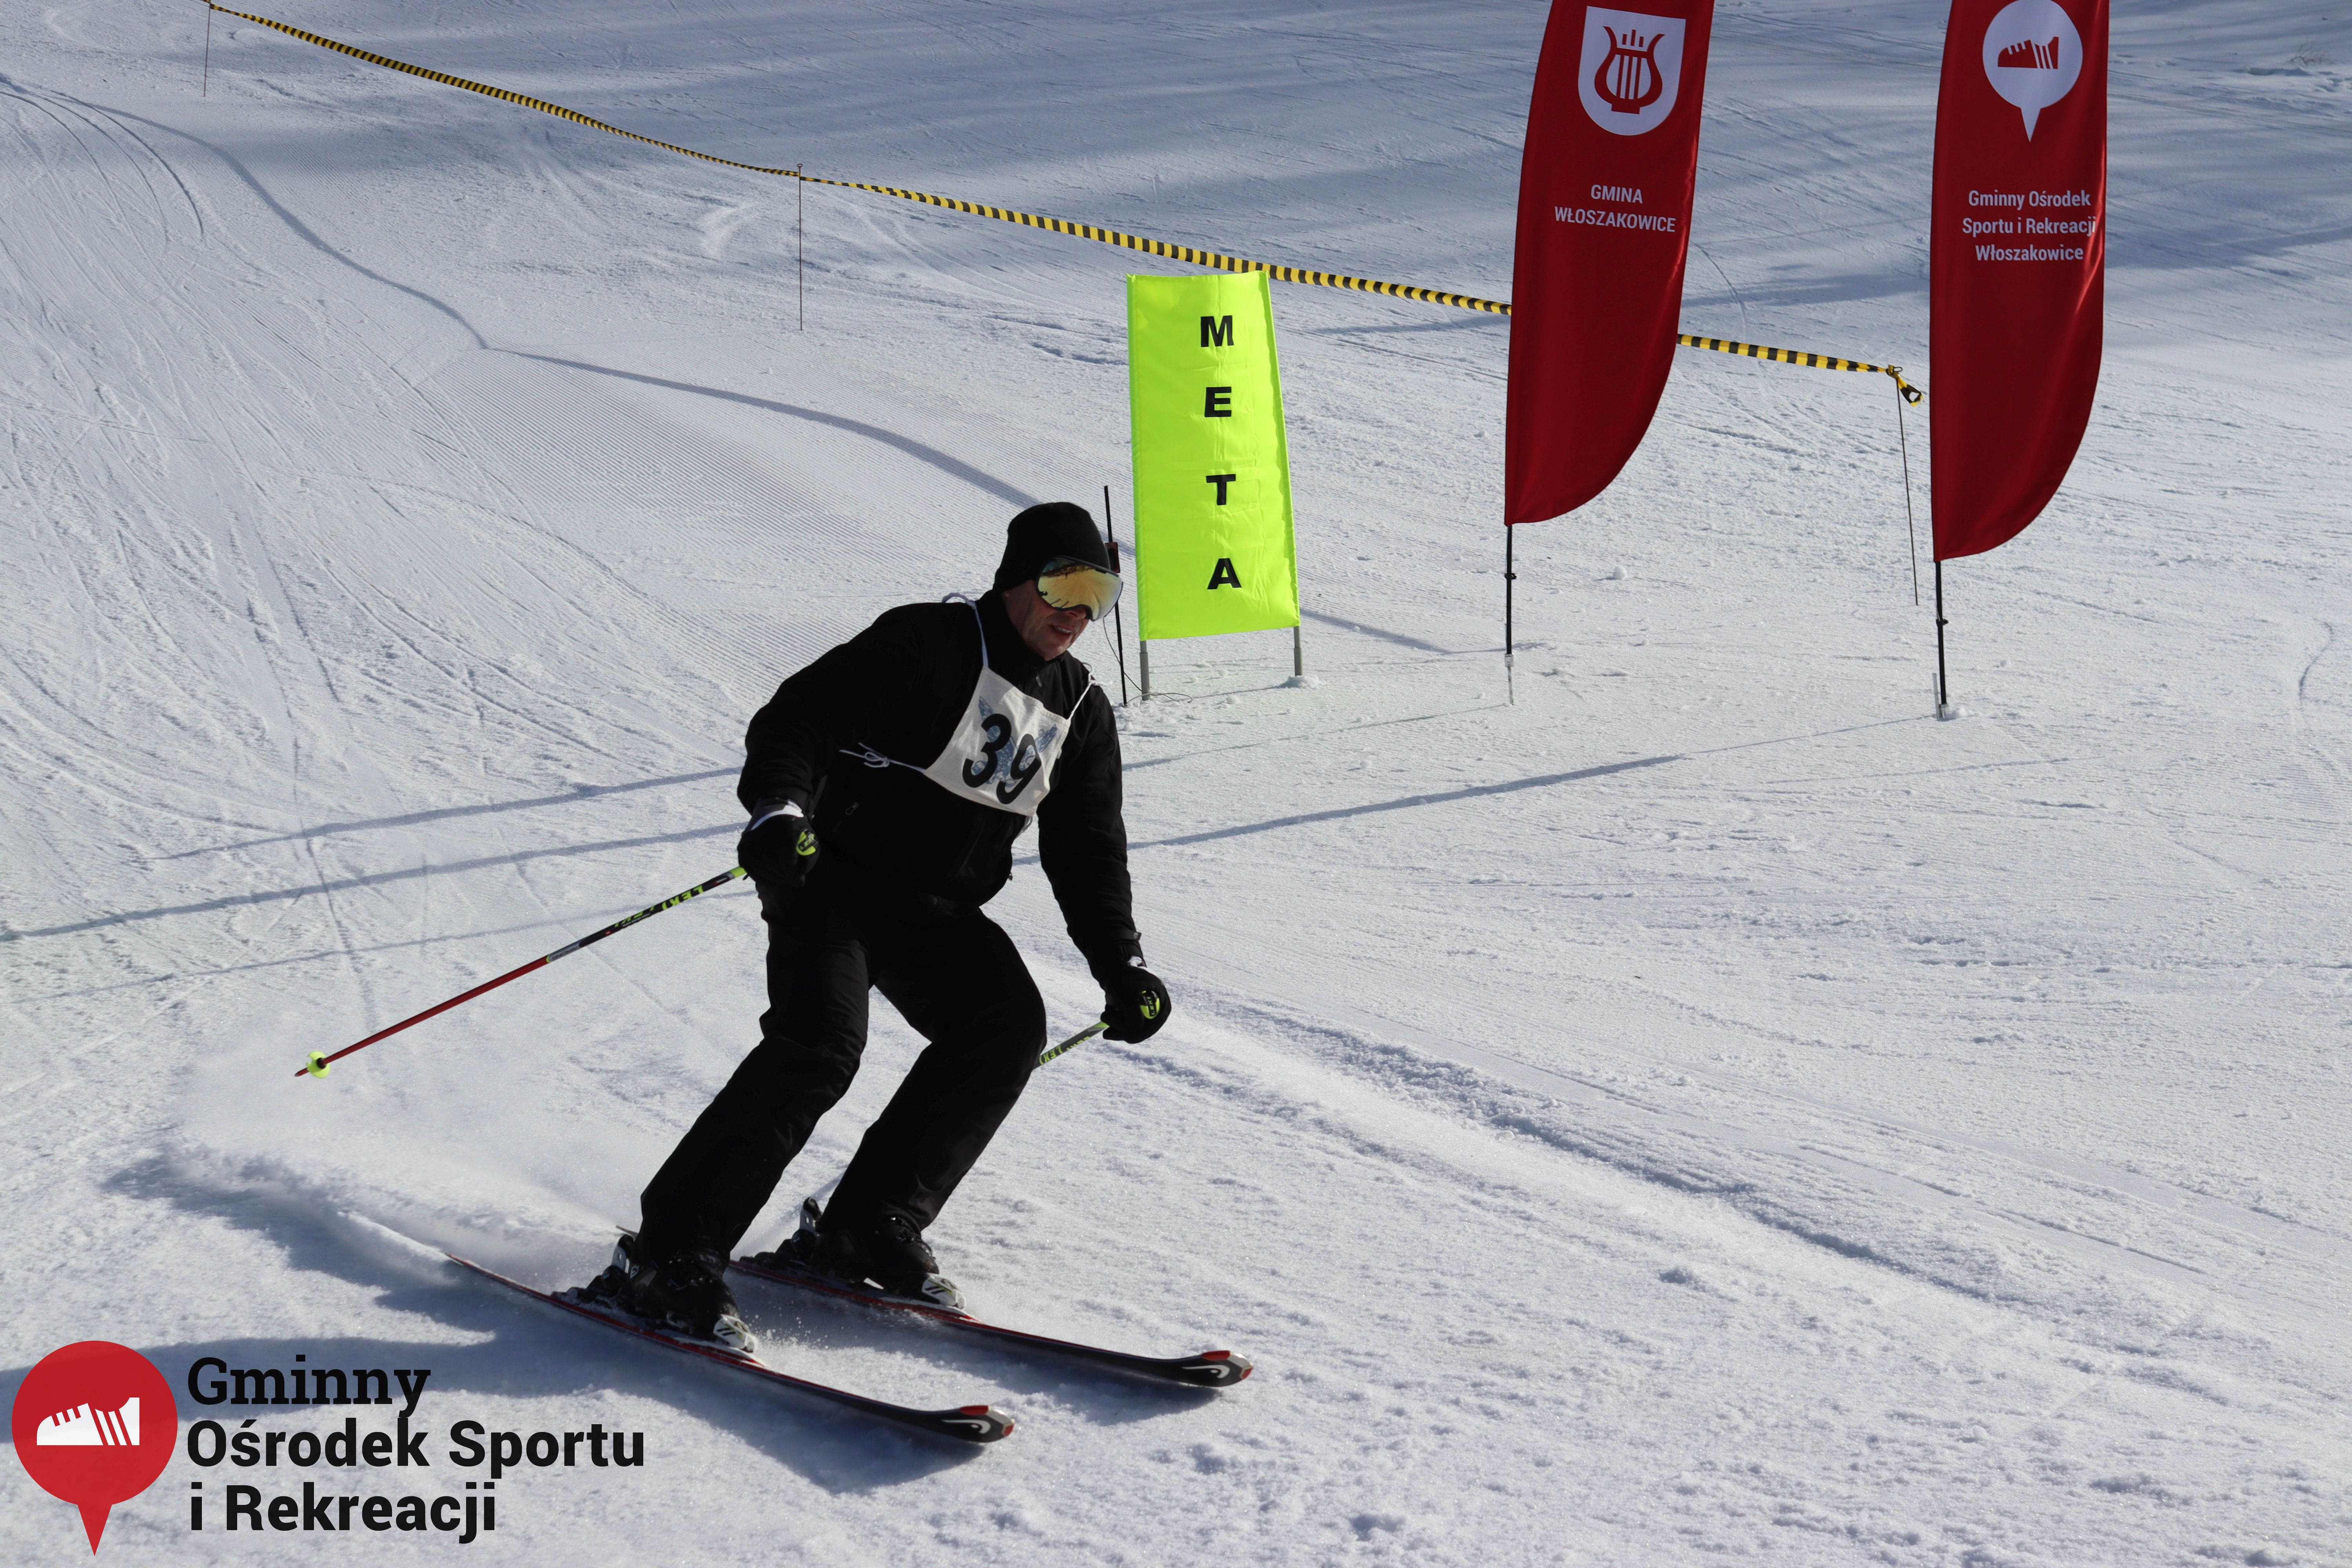 2022.02.12 - 18. Mistrzostwa Gminy Woszakowice w narciarstwie085.jpg - 2,76 MB